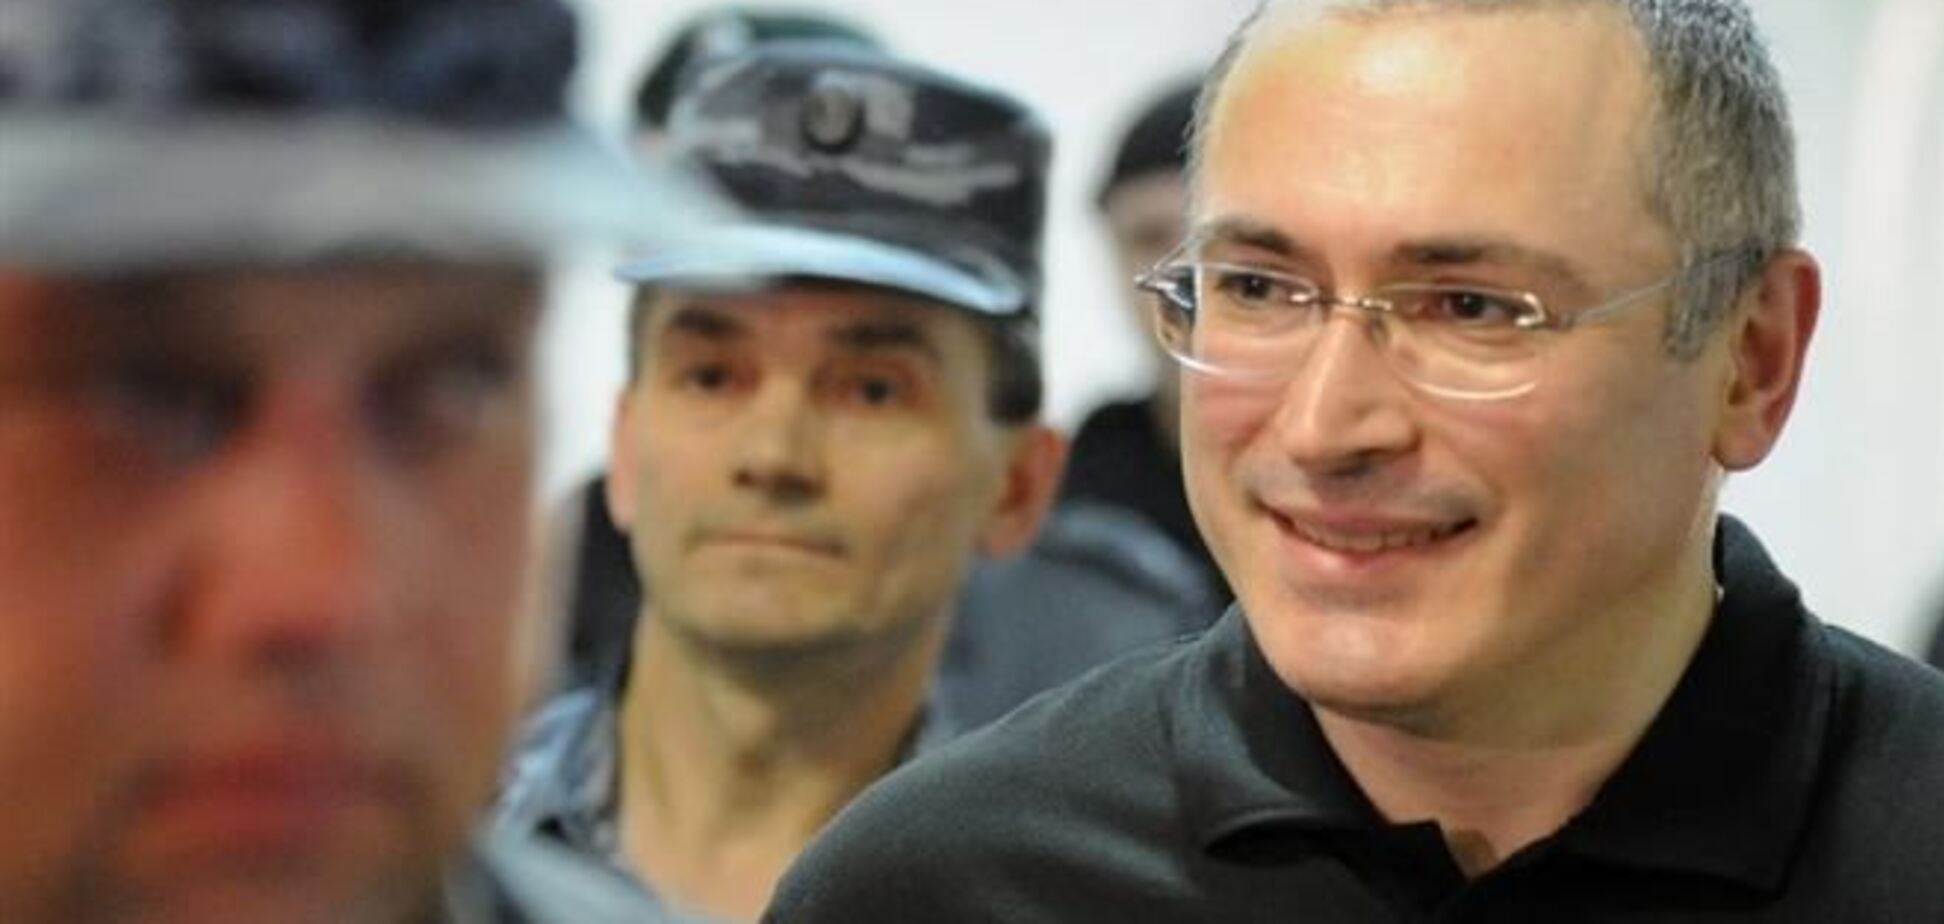 Свободный человек Михаил Ходорковский в Берлине